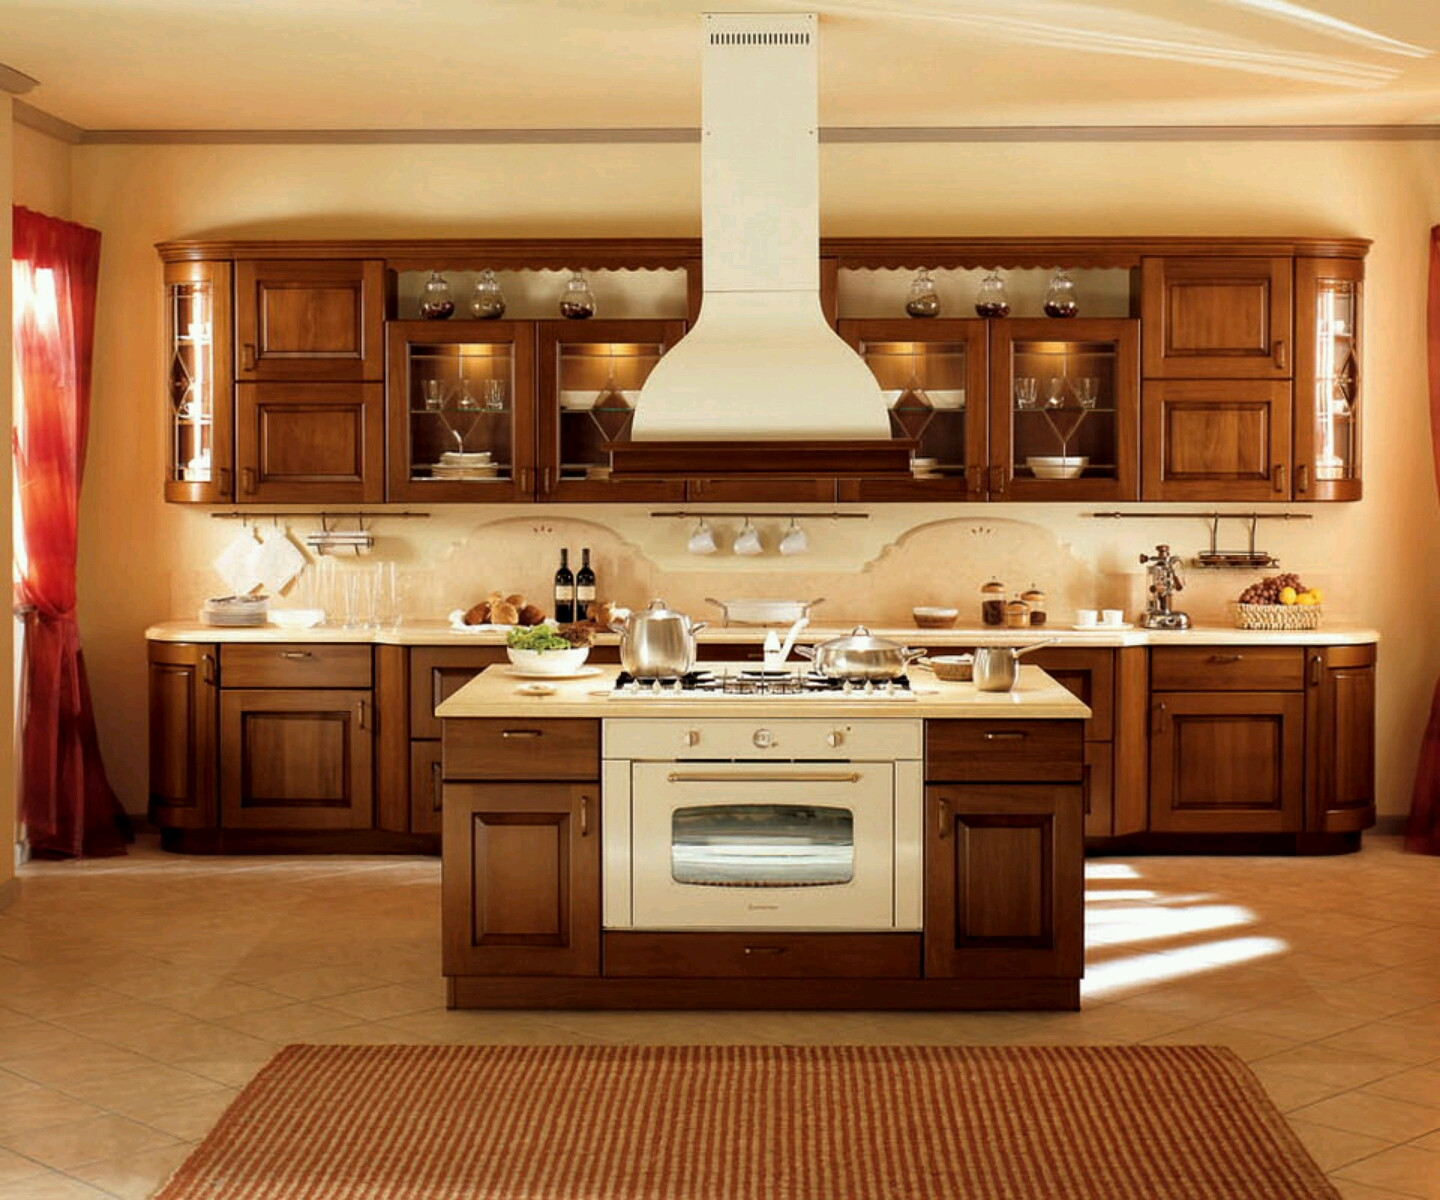 Modern Kitchen Cabinet Design Photos
 New home designs latest Modern kitchen cabinets designs